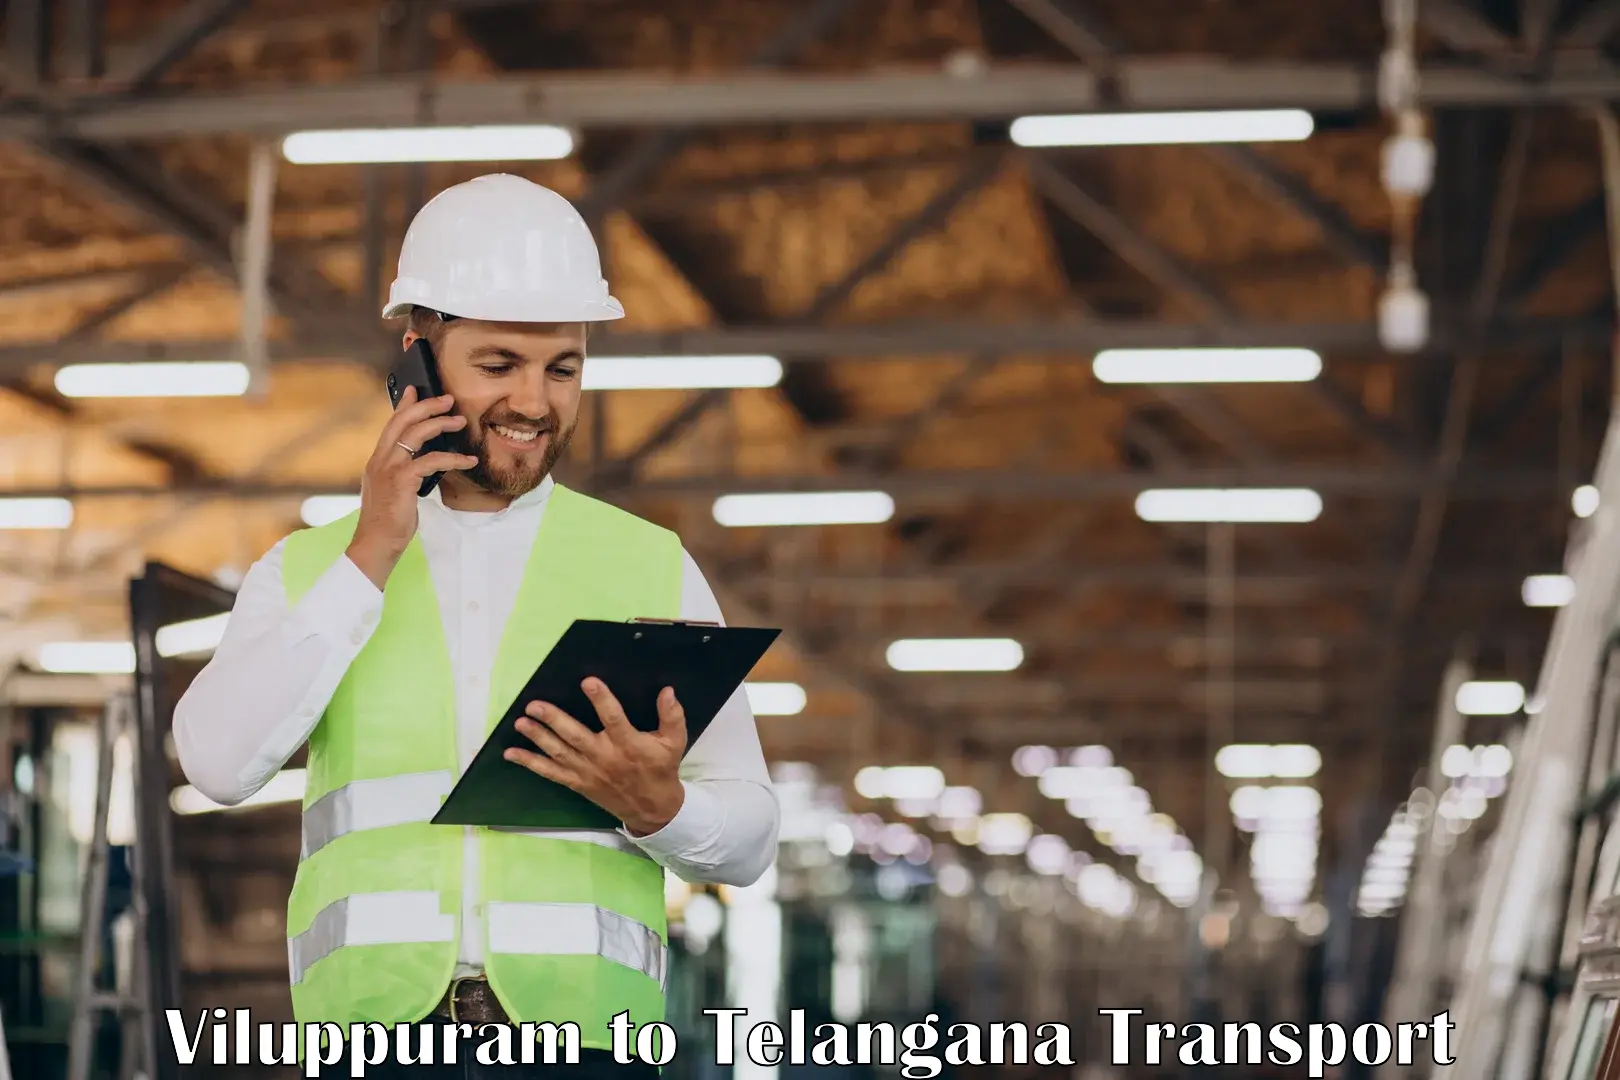 Cargo transport services Viluppuram to Karimnagar